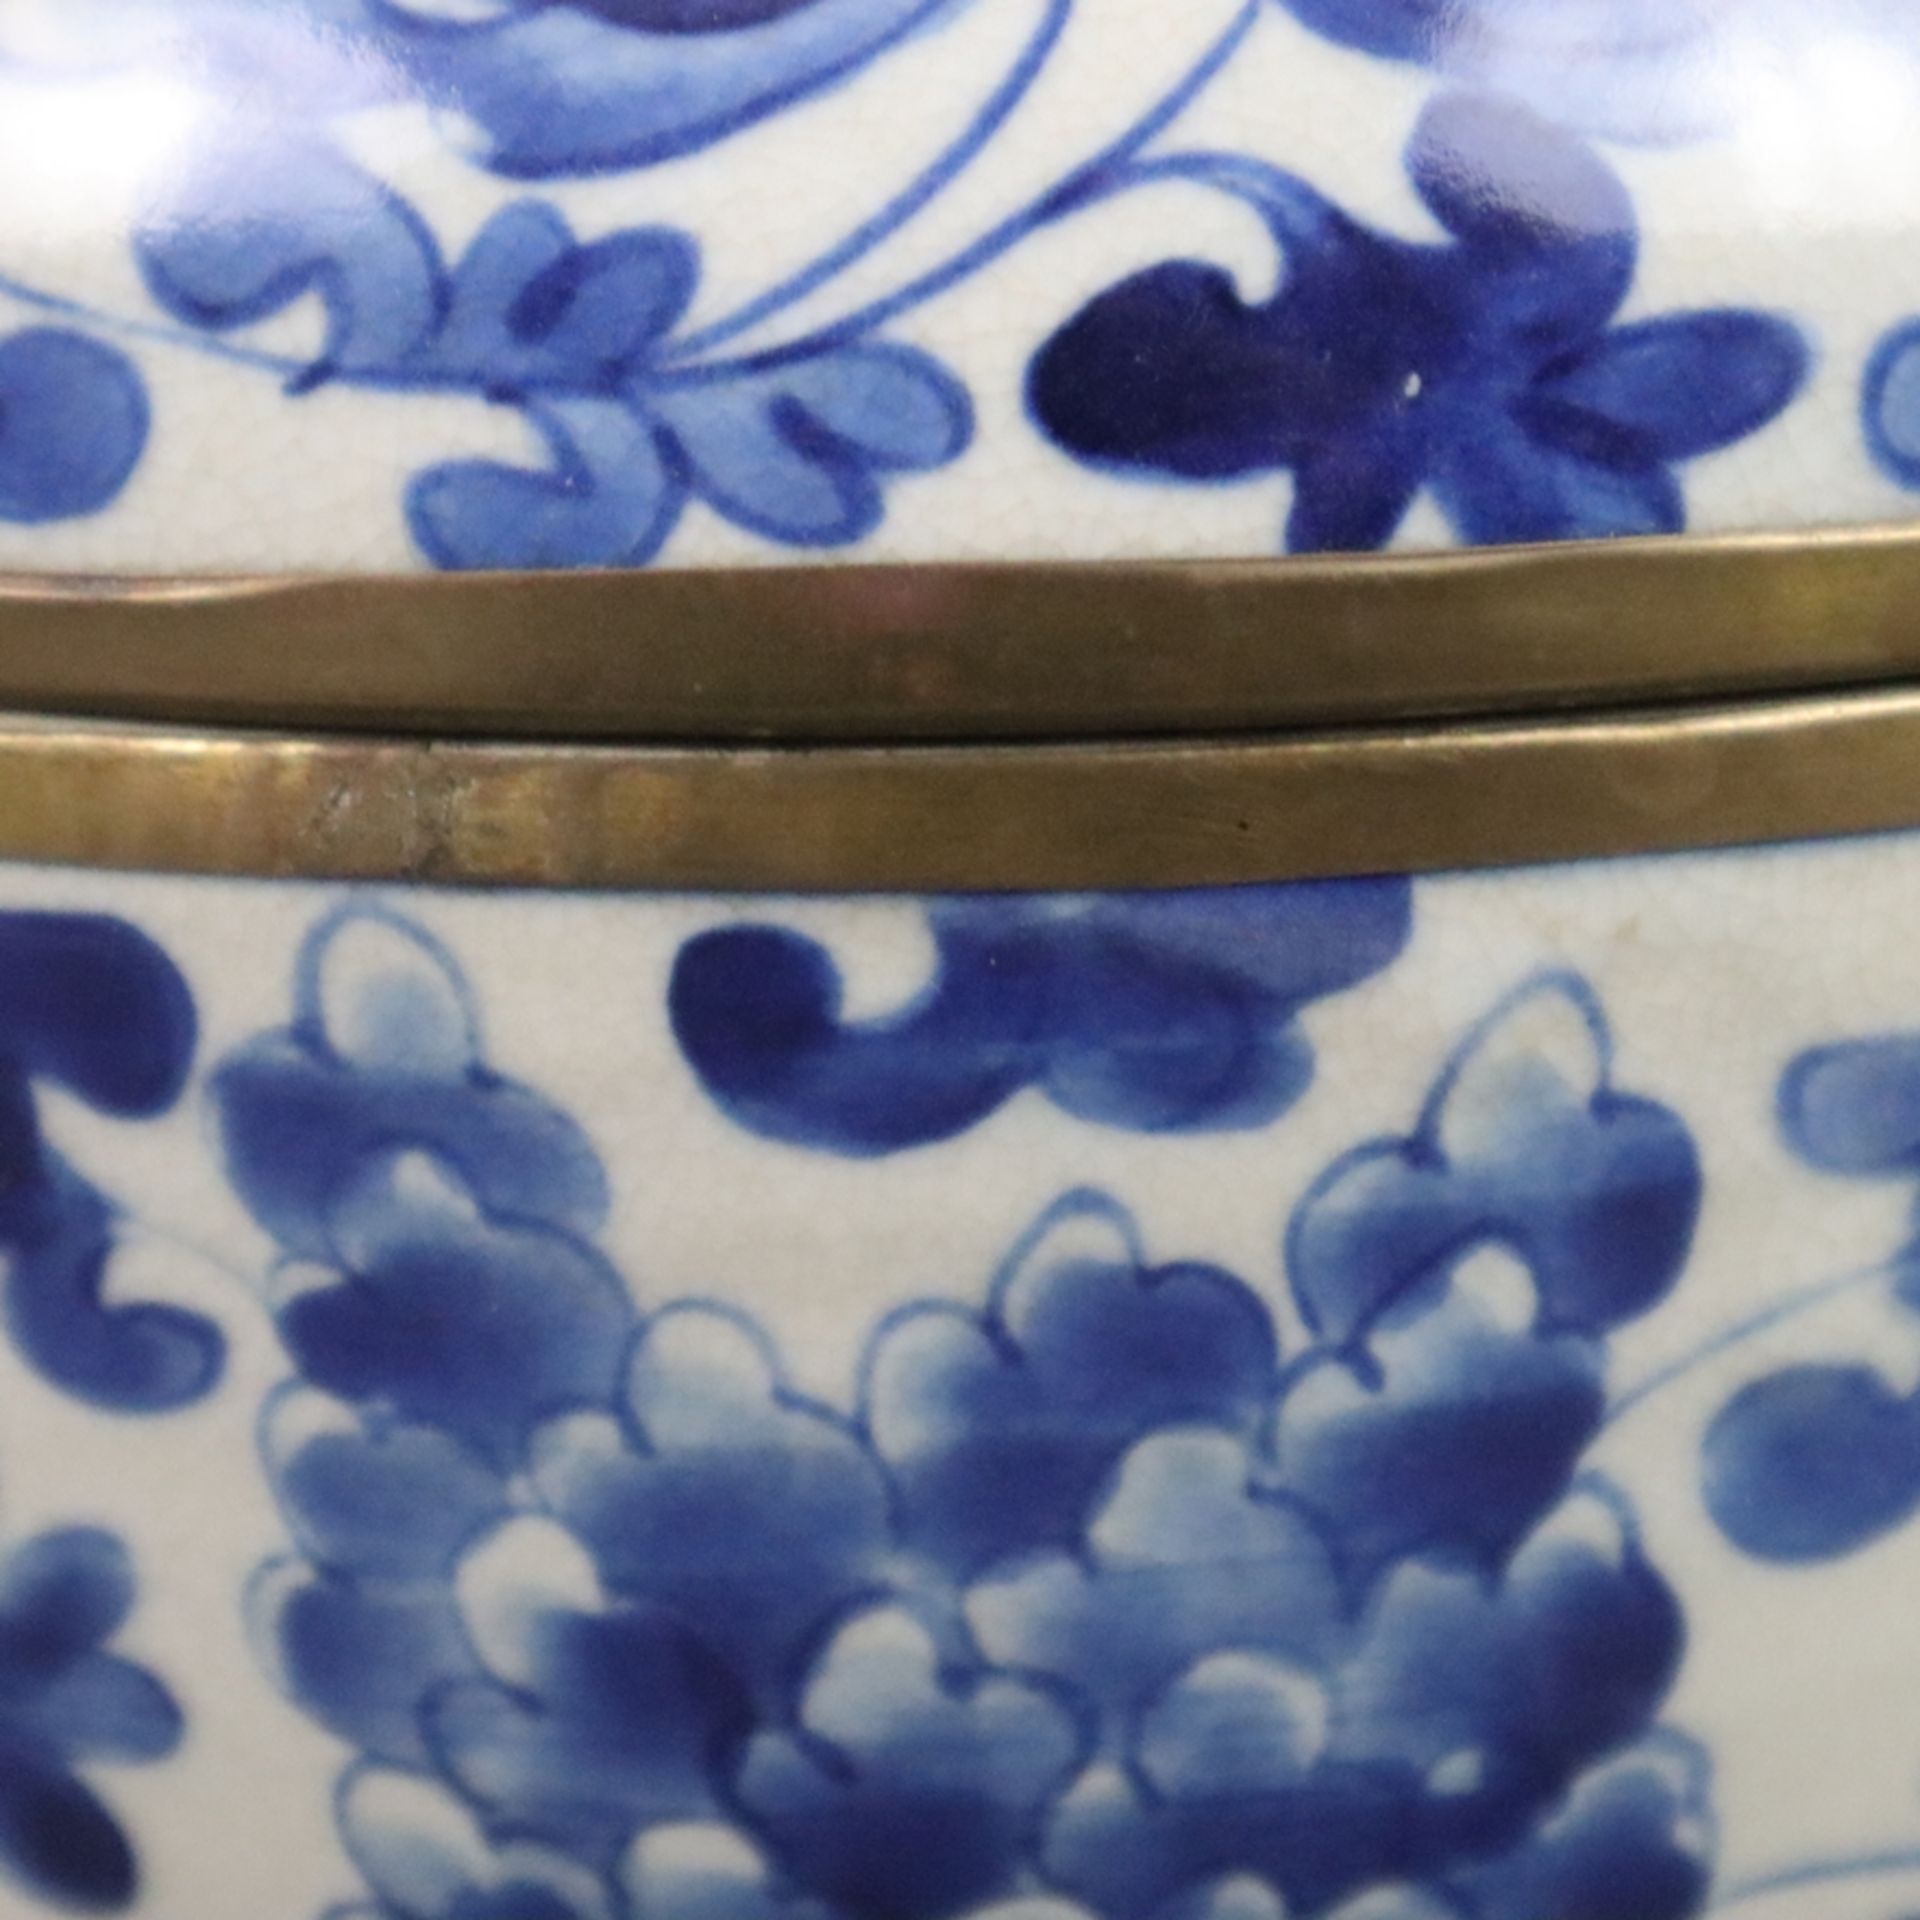 Blau-weiße Deckelschale in Granatapfelform - China, allseits Päoniendekor in Unterglasurblau, Glasu - Bild 4 aus 8